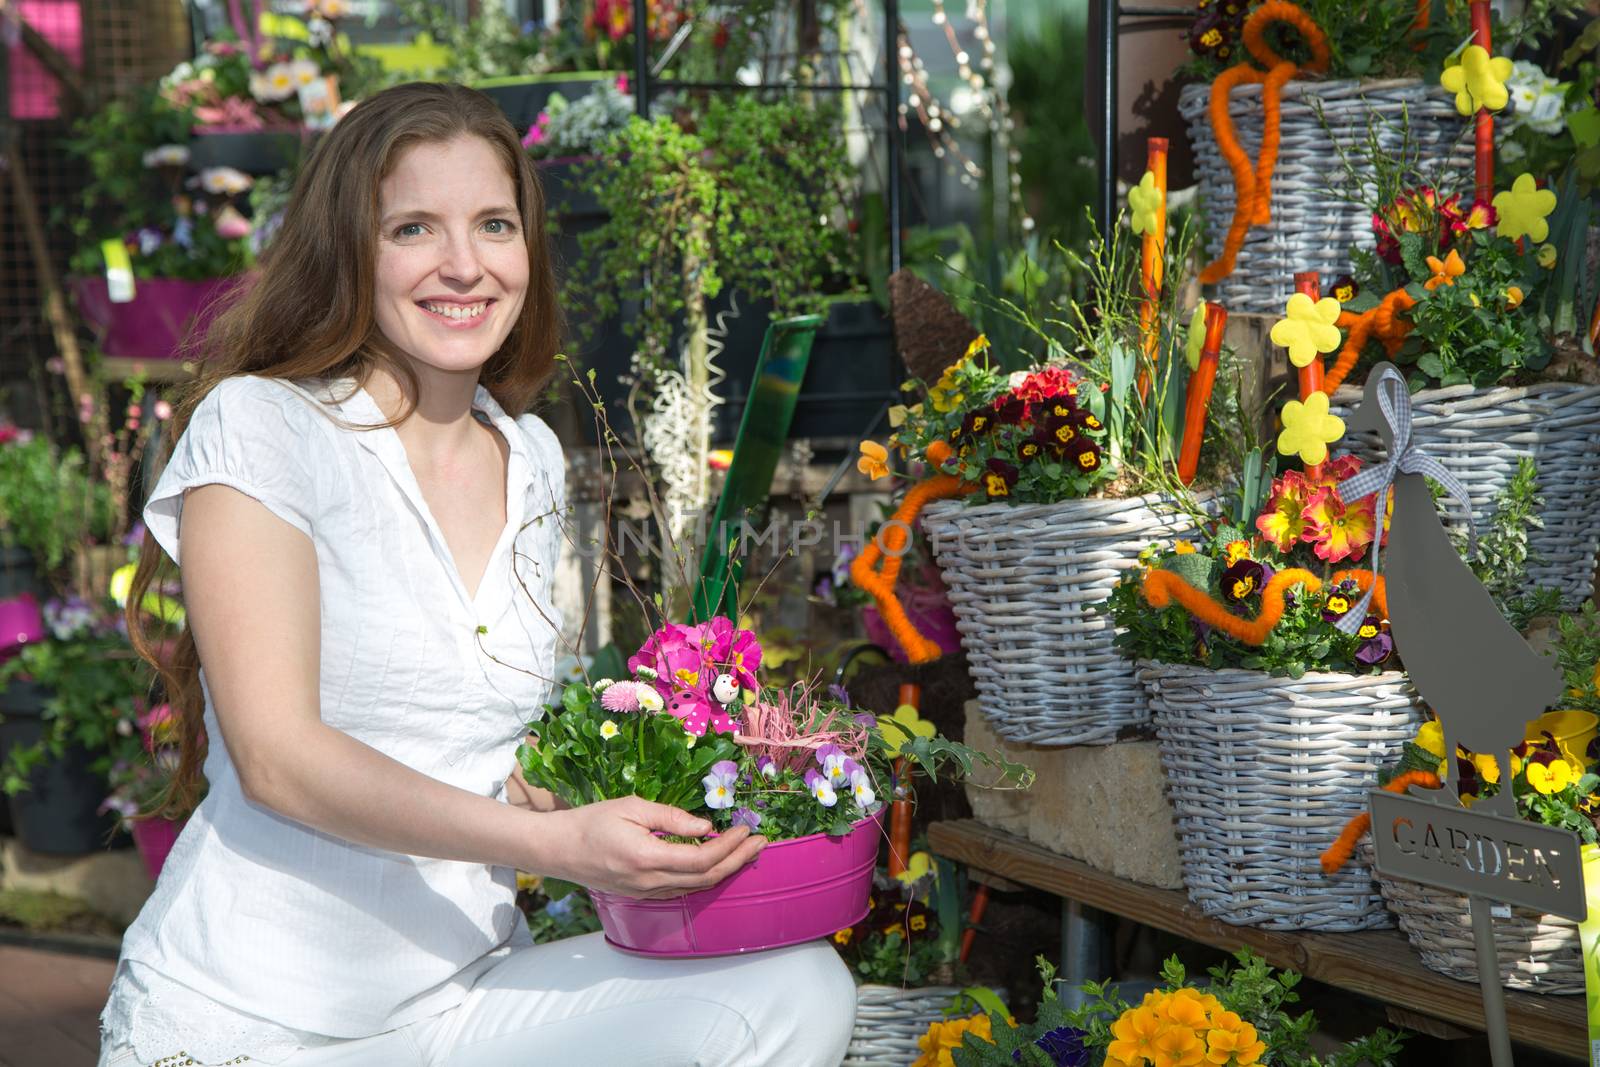 Woman in flower shop among many flower arrangements